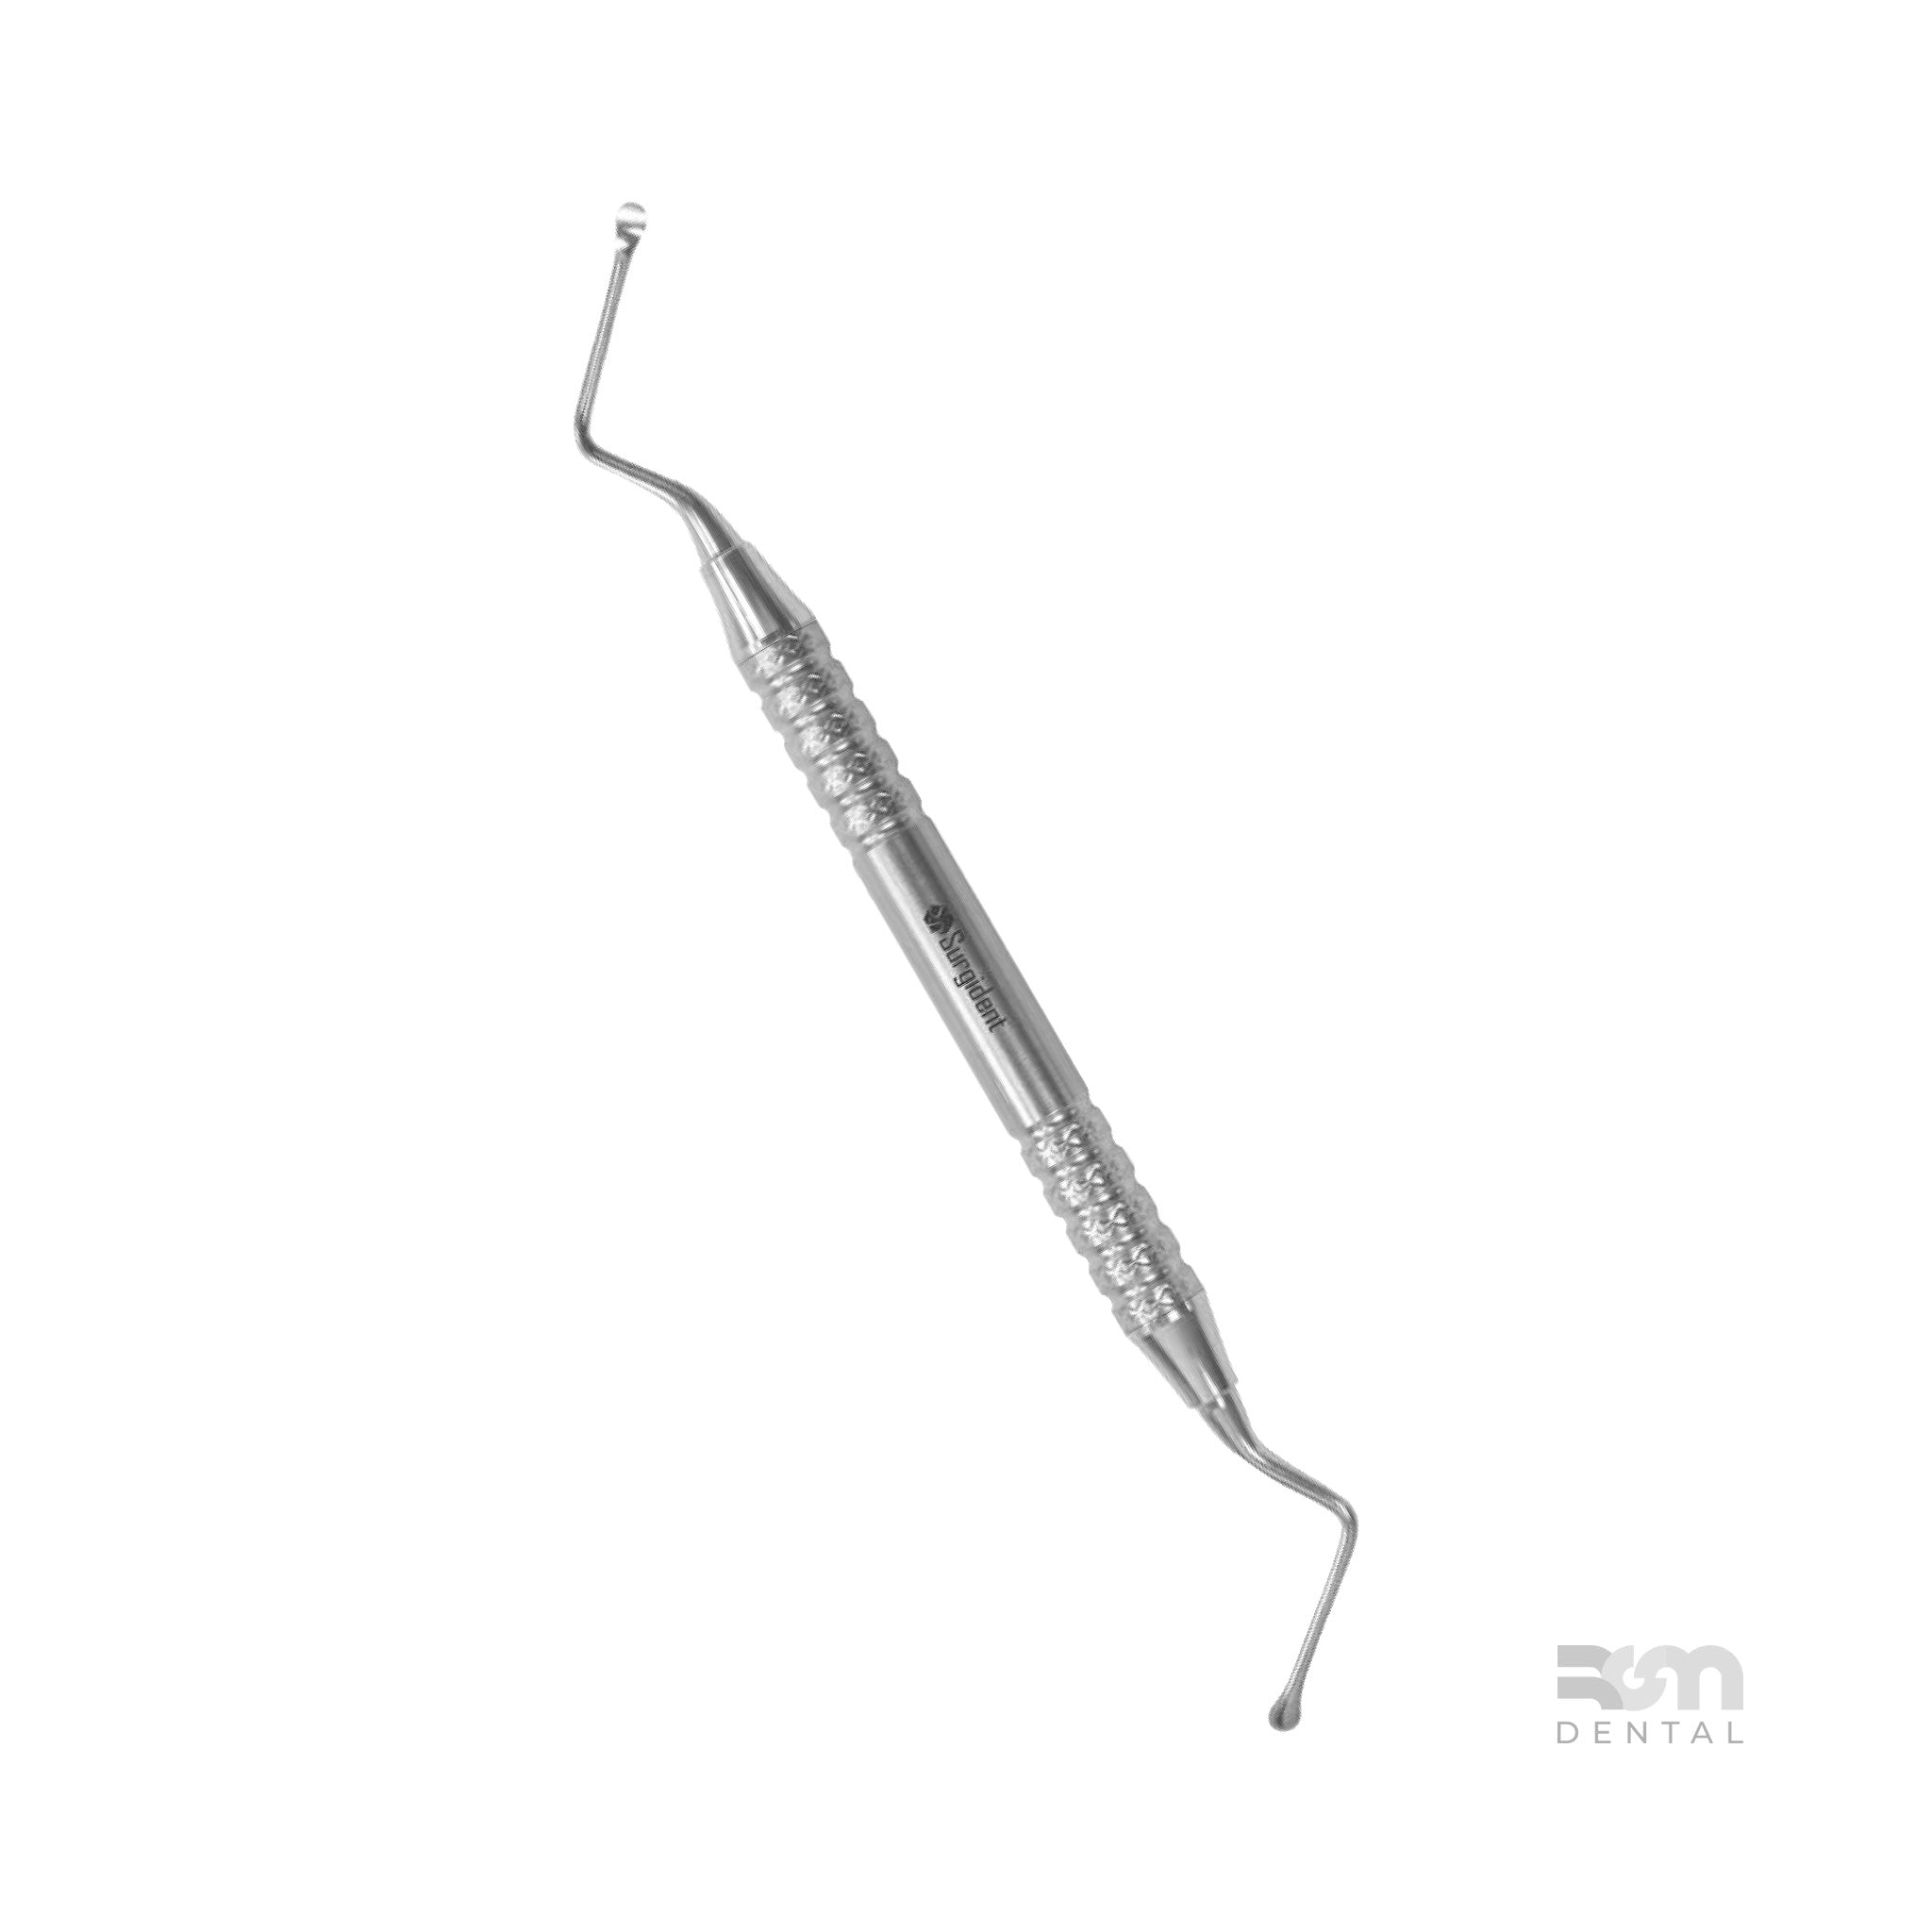 Surgical Curette CM11 : 3.5mm